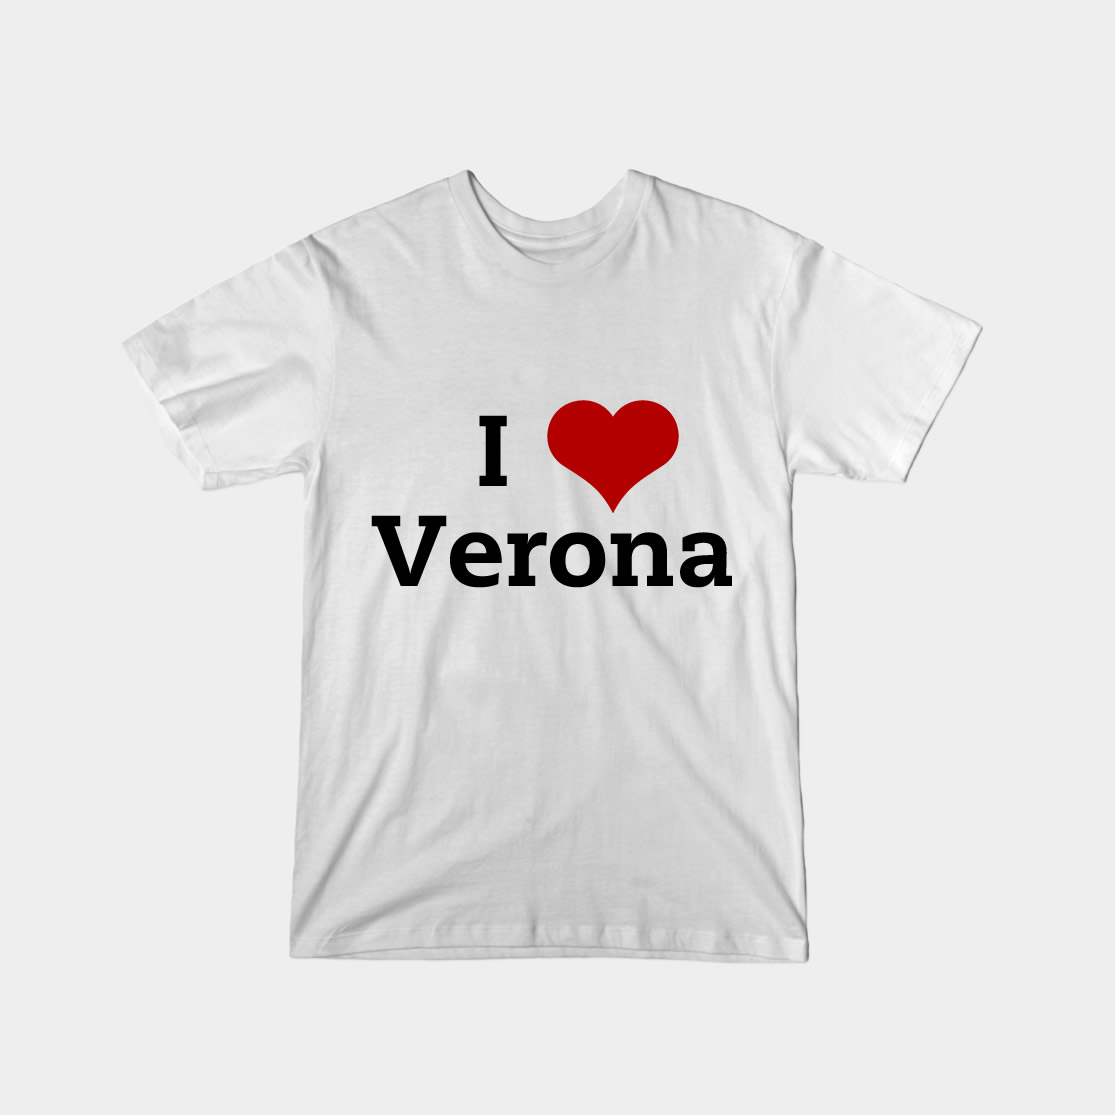 I-love-Verona-bianca